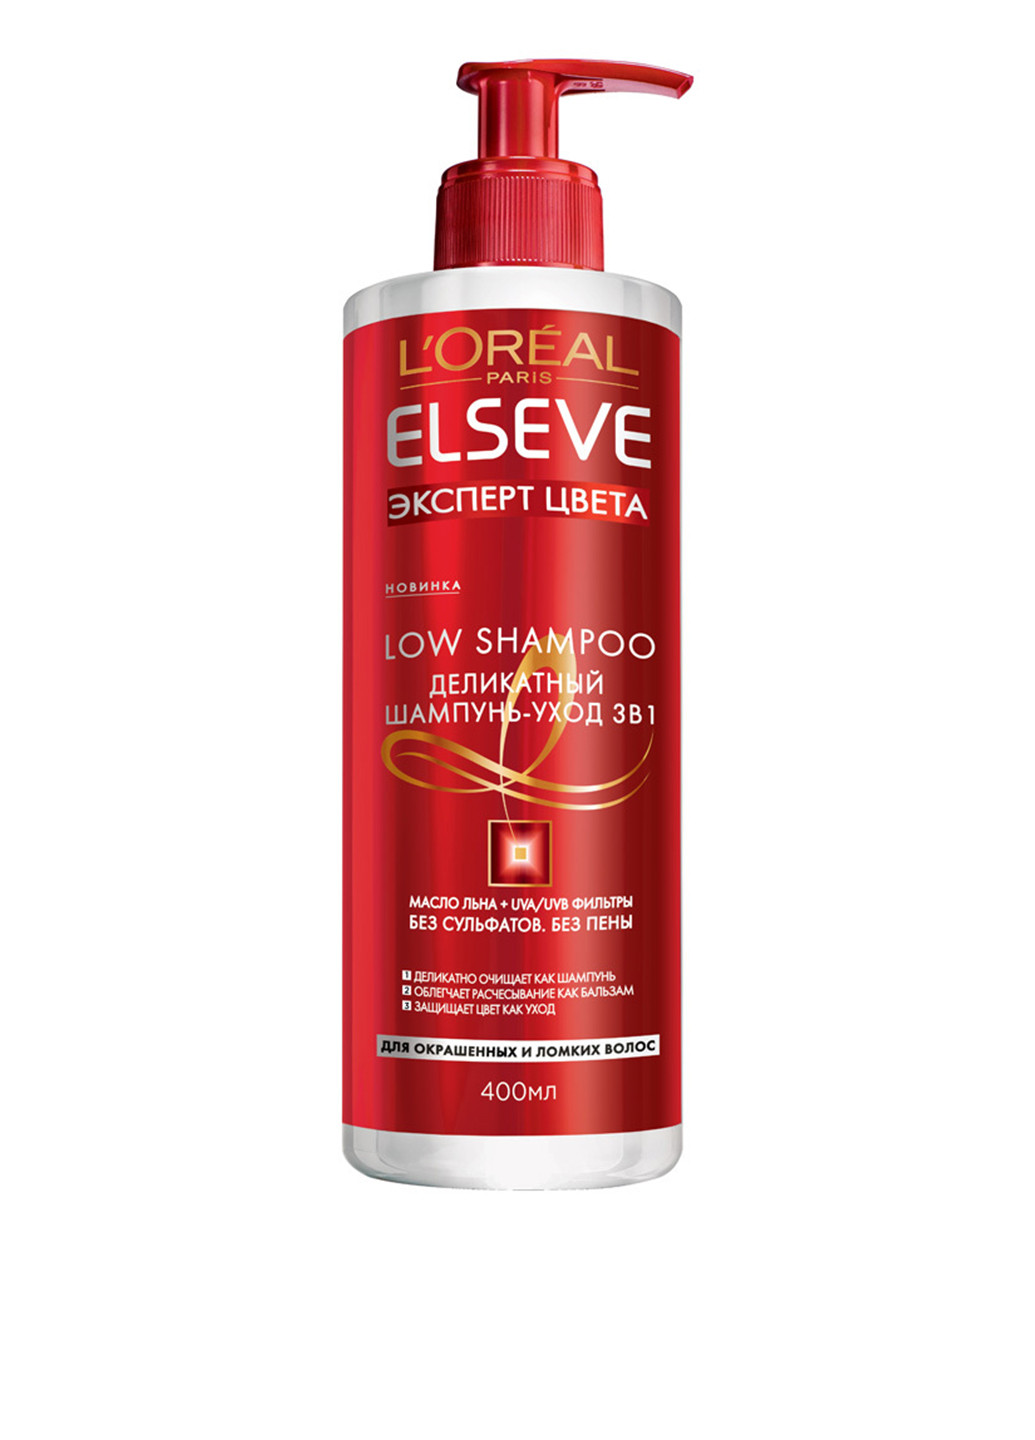 Деликатный шампунь-уход для окрашенных и ломких волос 3в1 "Эксперт Цвета" Elseve Low Shampoo 400 мл L'Oreal Paris (88092626)